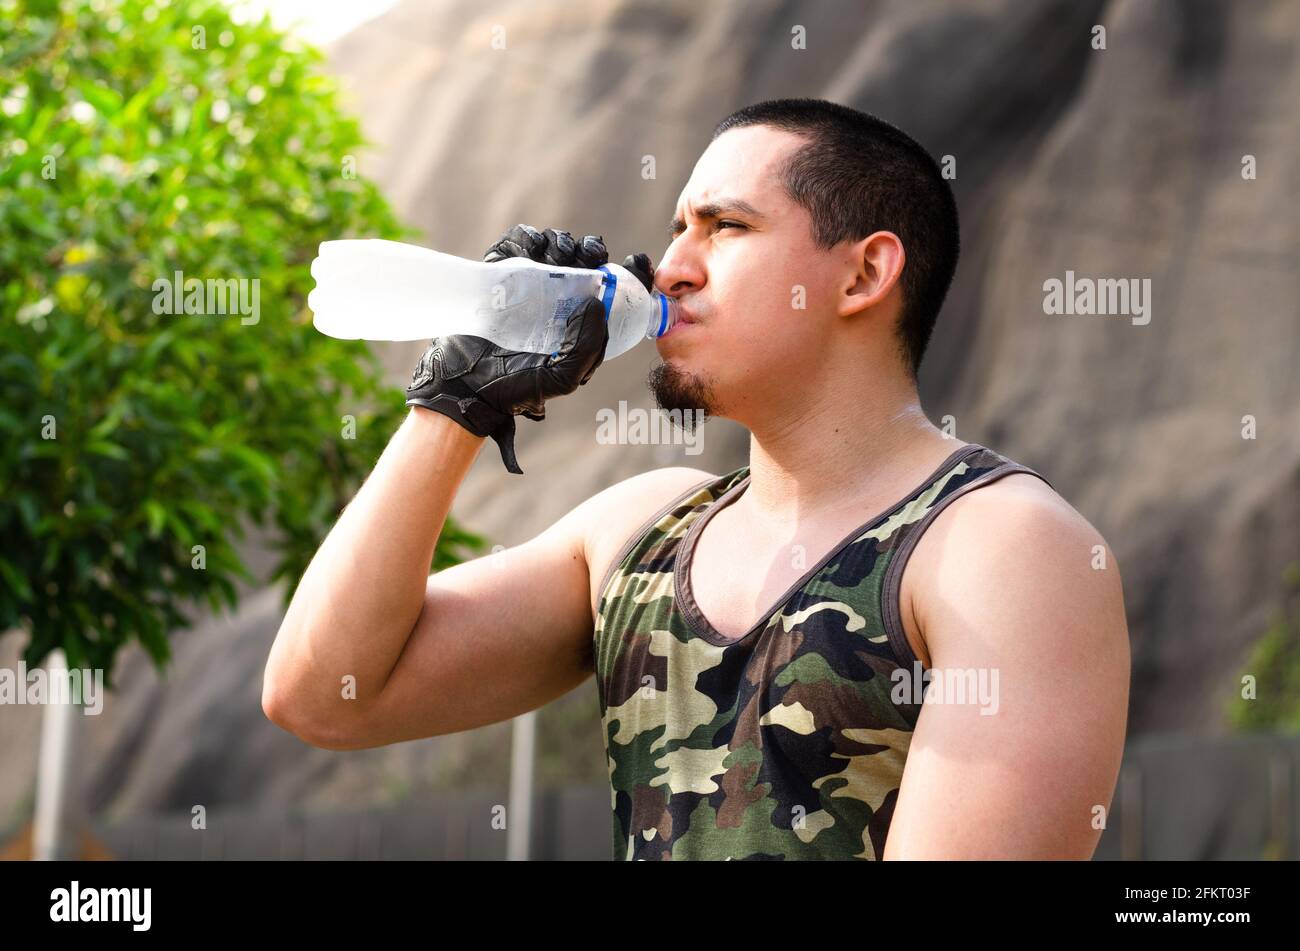 Erschöpfter junger Athlet, der während einer Laufstrecke frisches Wasser trinkt, um sich abzukühlen. Stockfoto